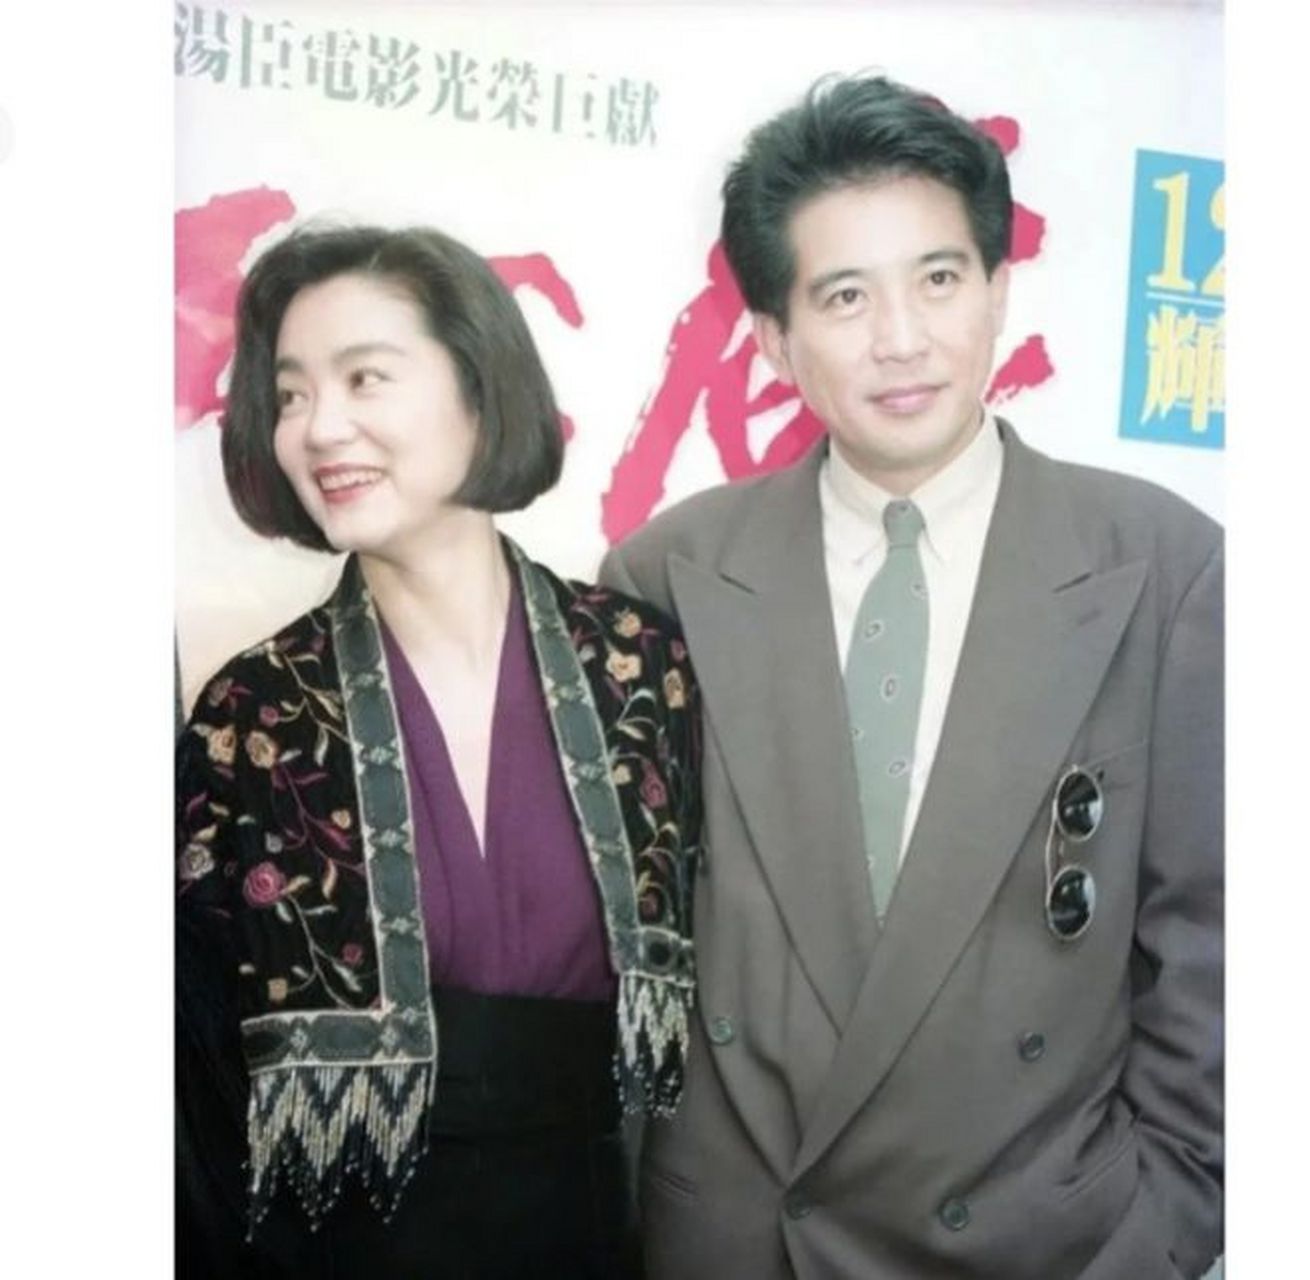 在1990年,林青霞与秦汉一同拍摄了一张珍贵的合影